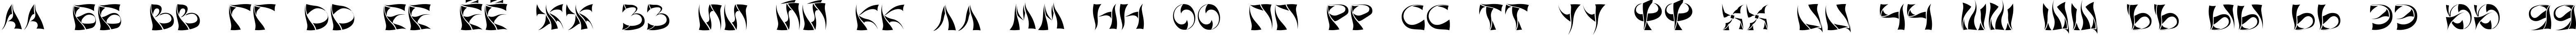 Пример написания русского алфавита шрифтом Xorx_windy Cyr